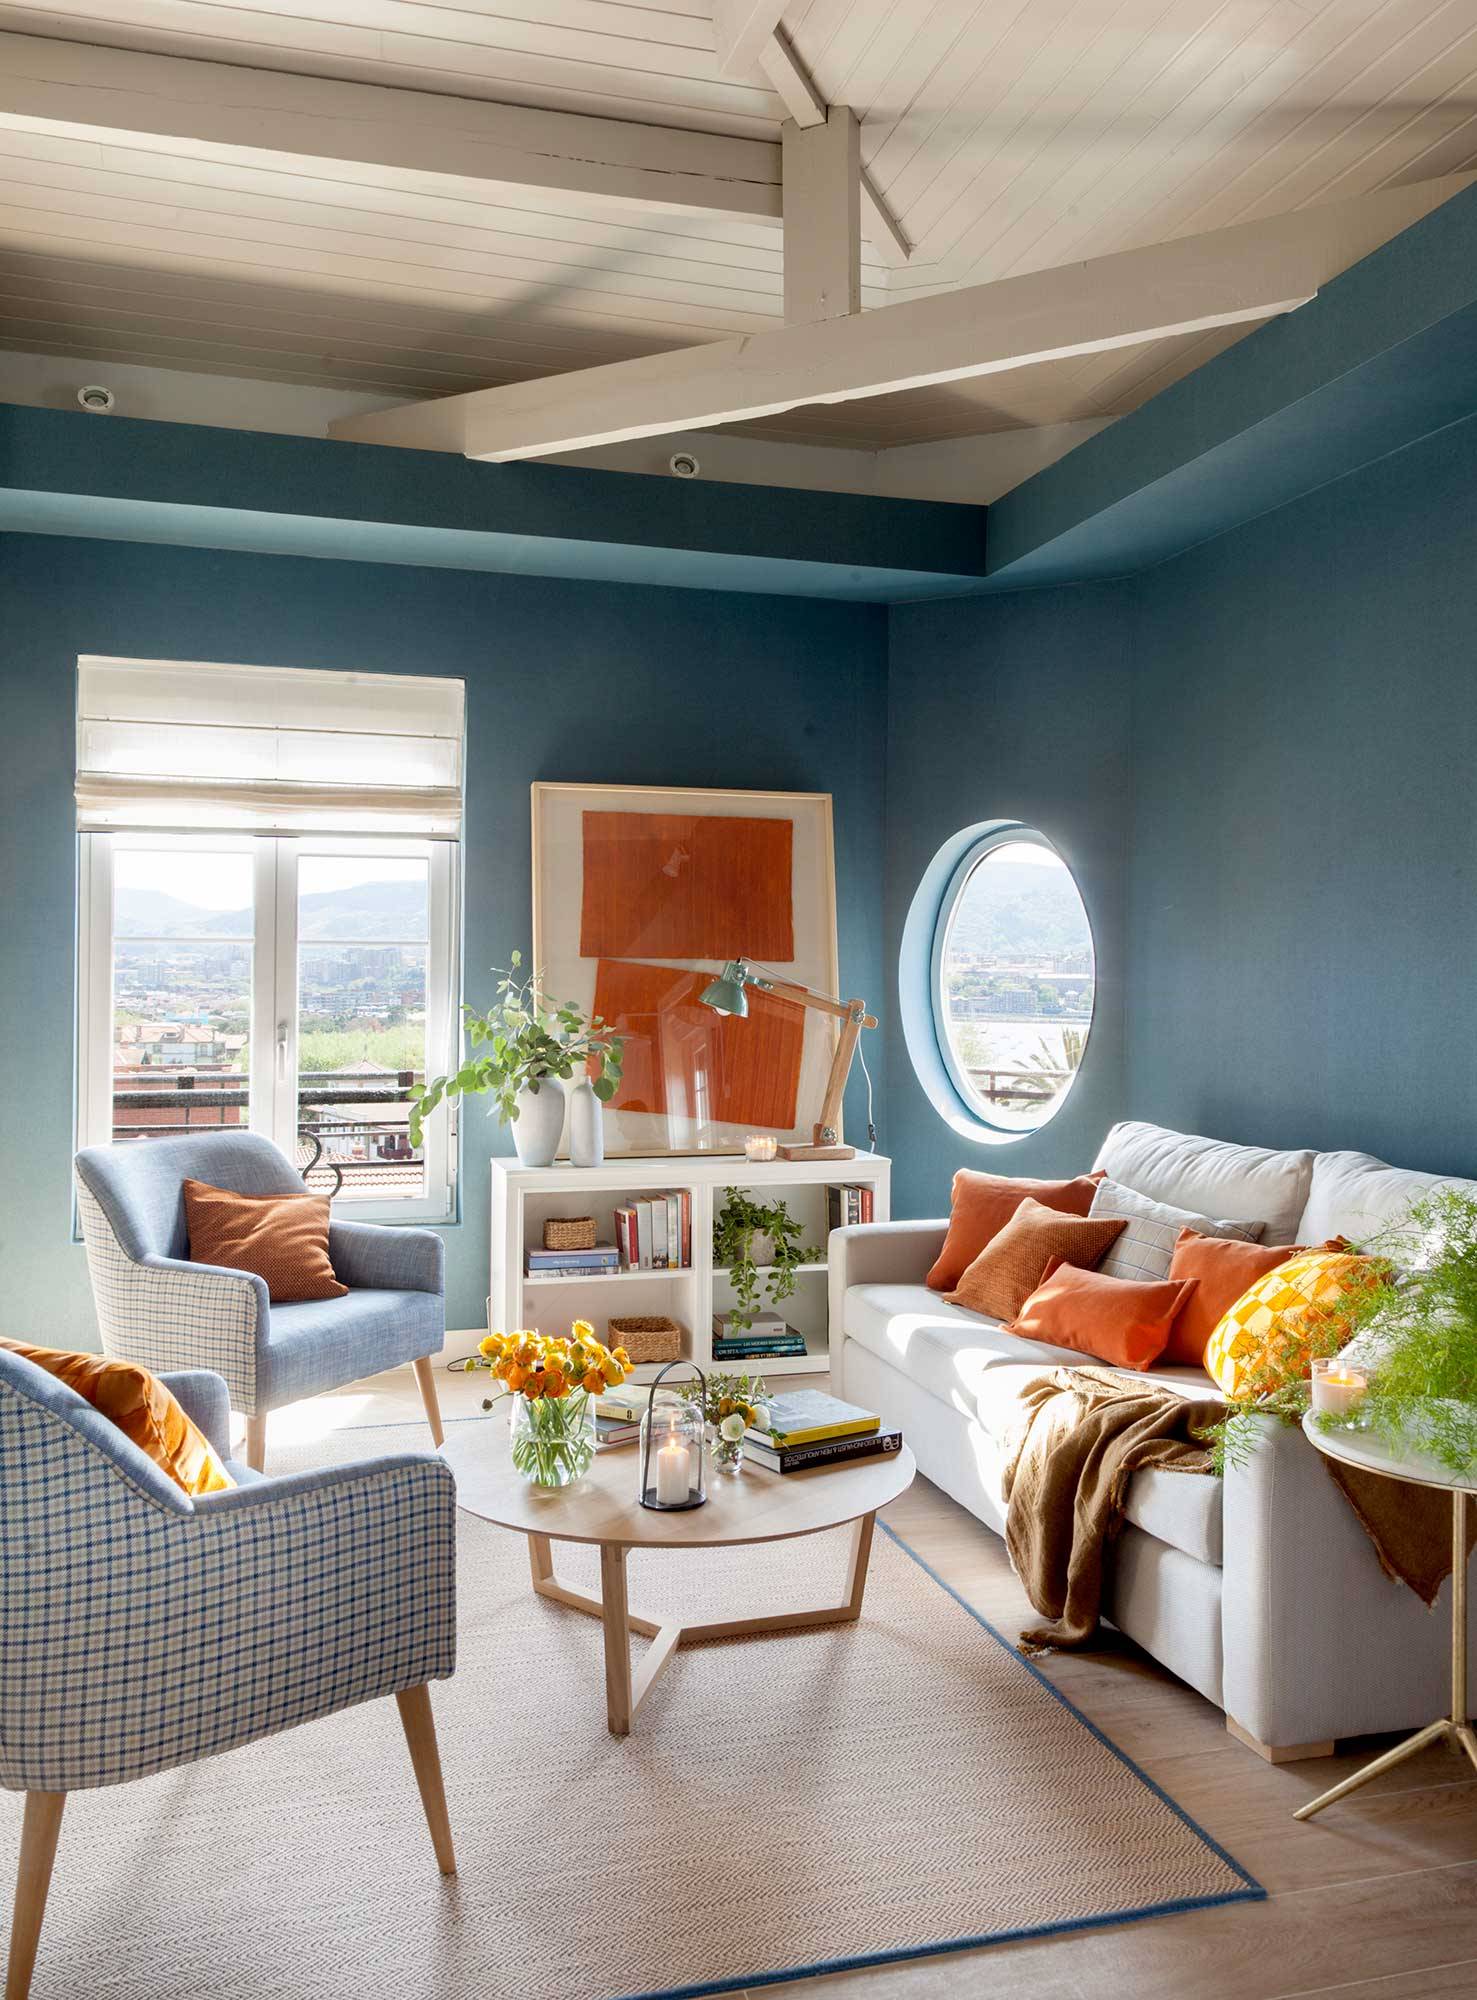 salon decorado pared azul y cuadro naranja_00511448